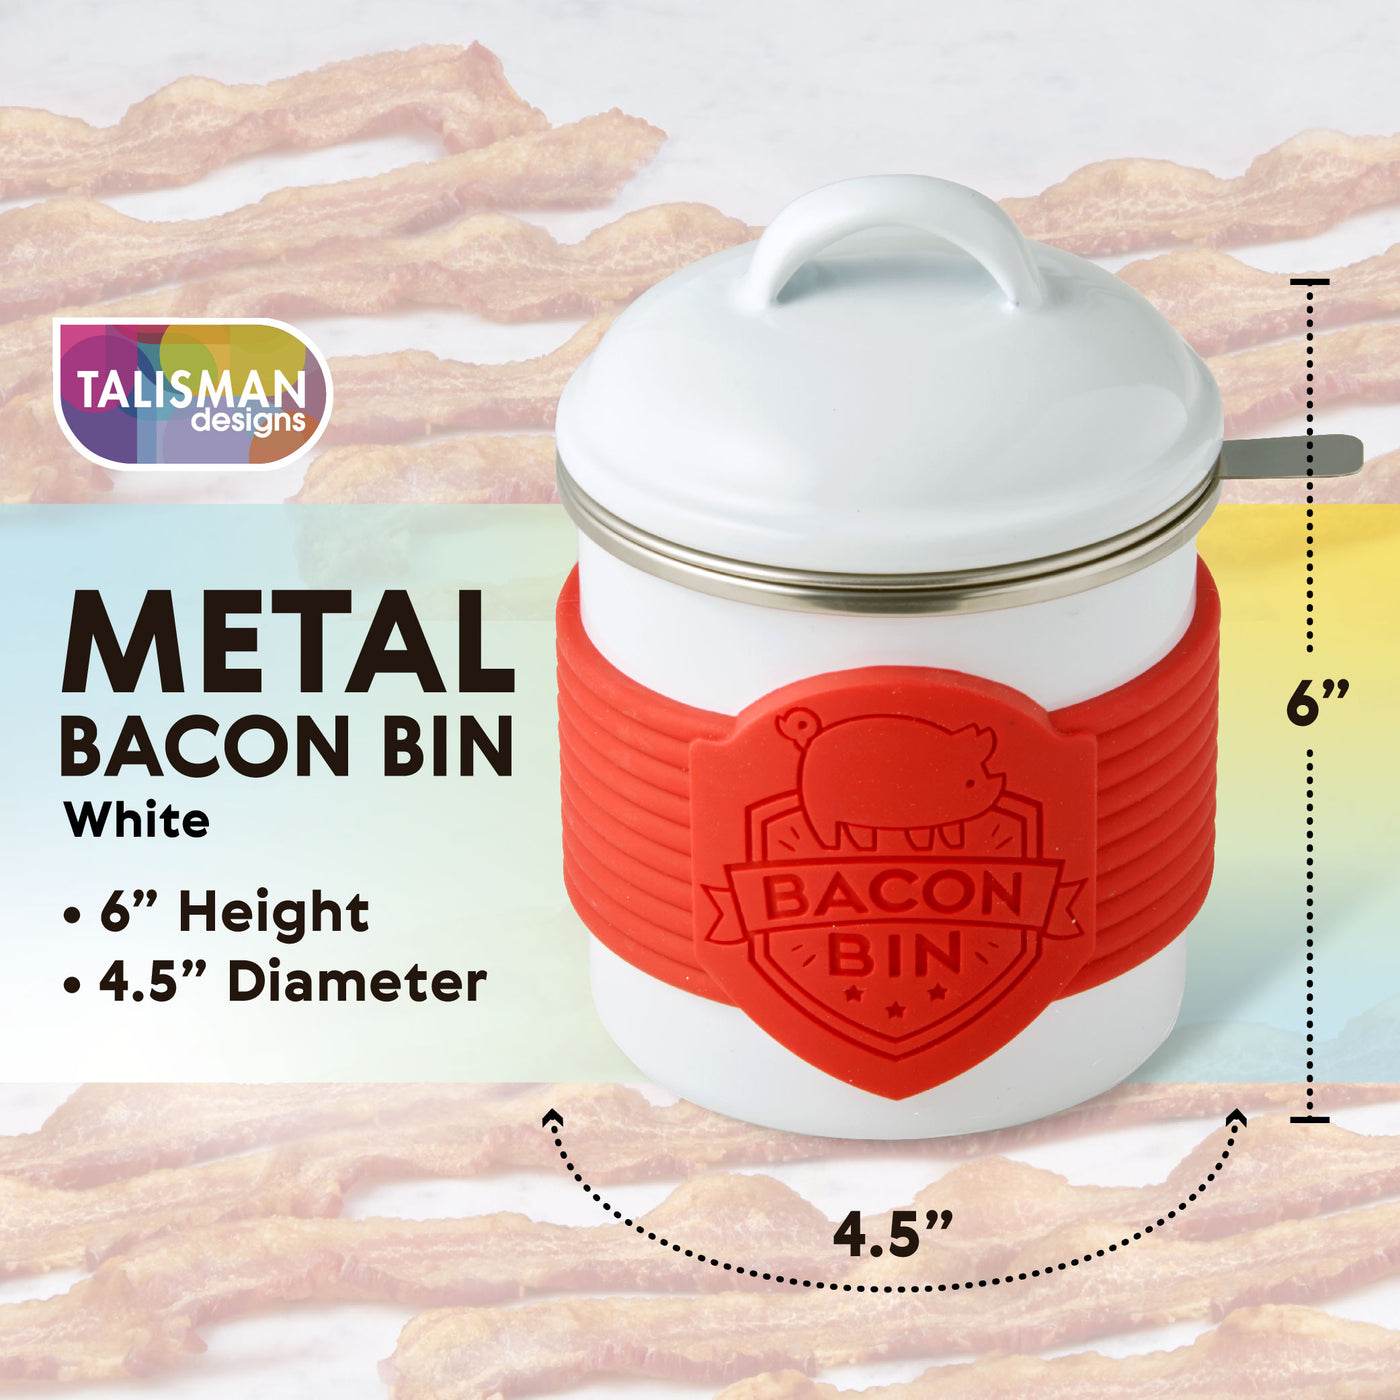 Metal Bacon Bin Grease Holder- Red – Hiwasse Mercantile